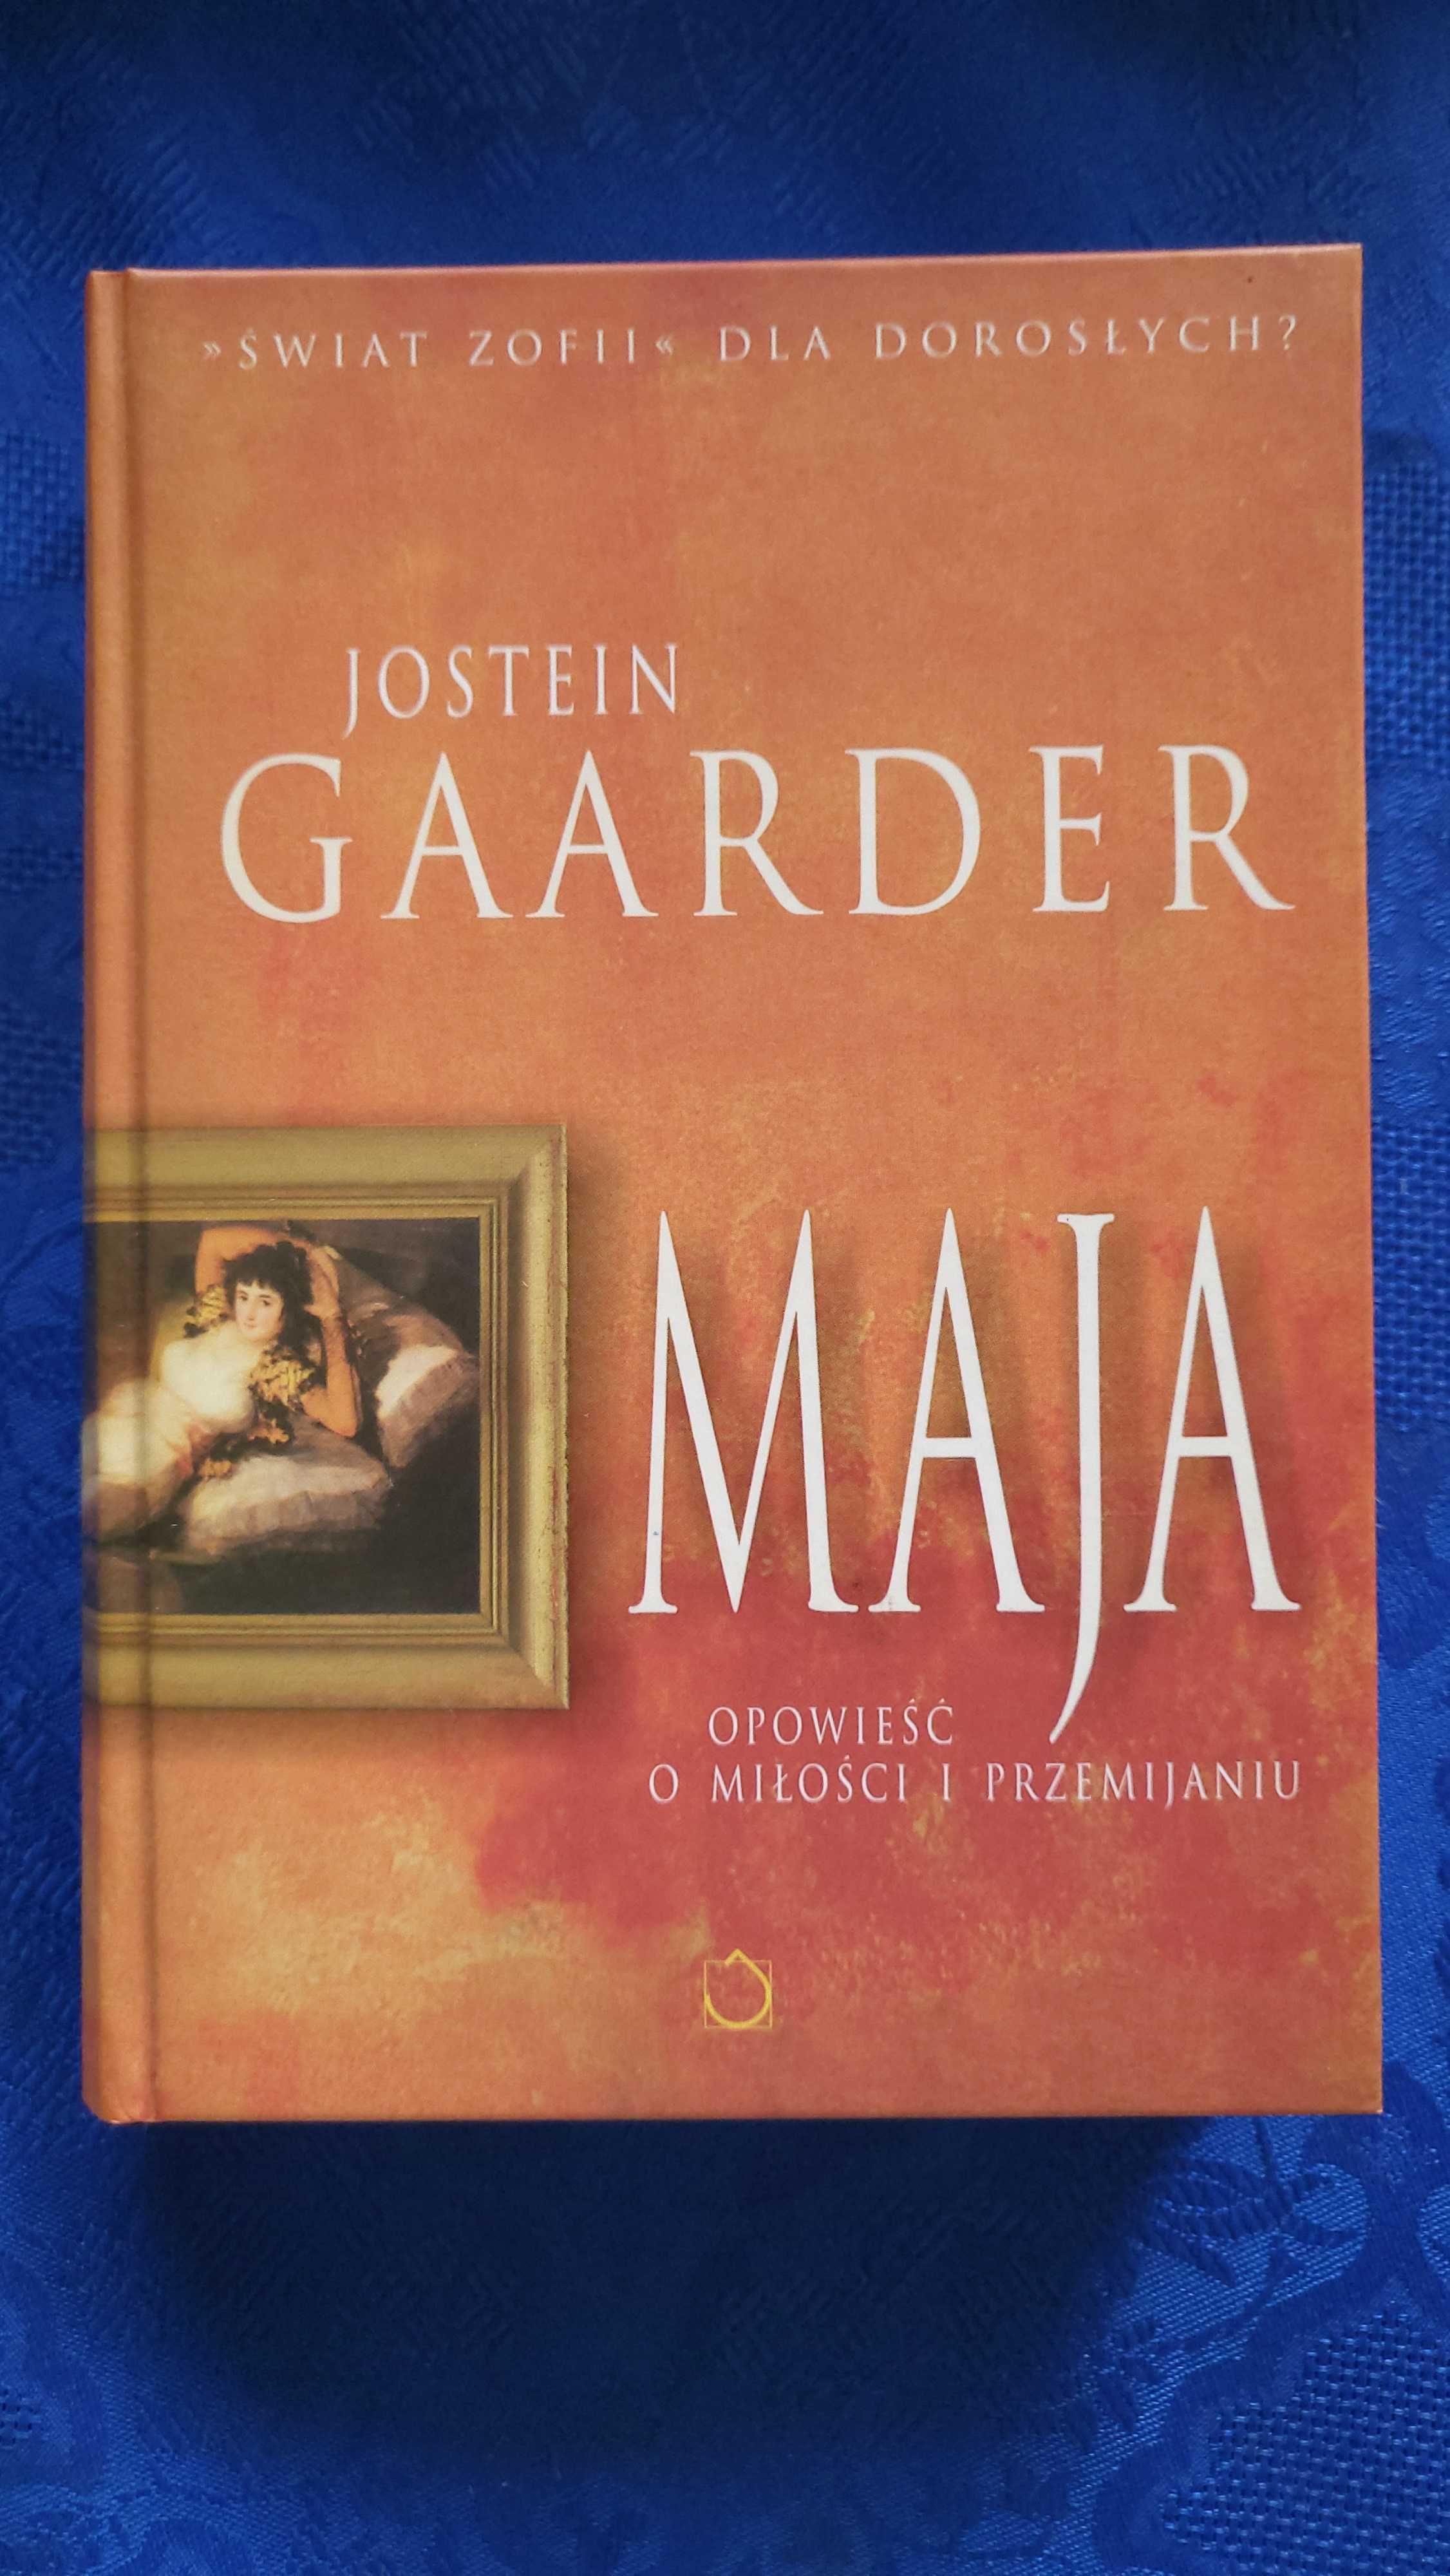 Jostein Gaarder - Maja książka w twardej oprawie nowa nieużywana